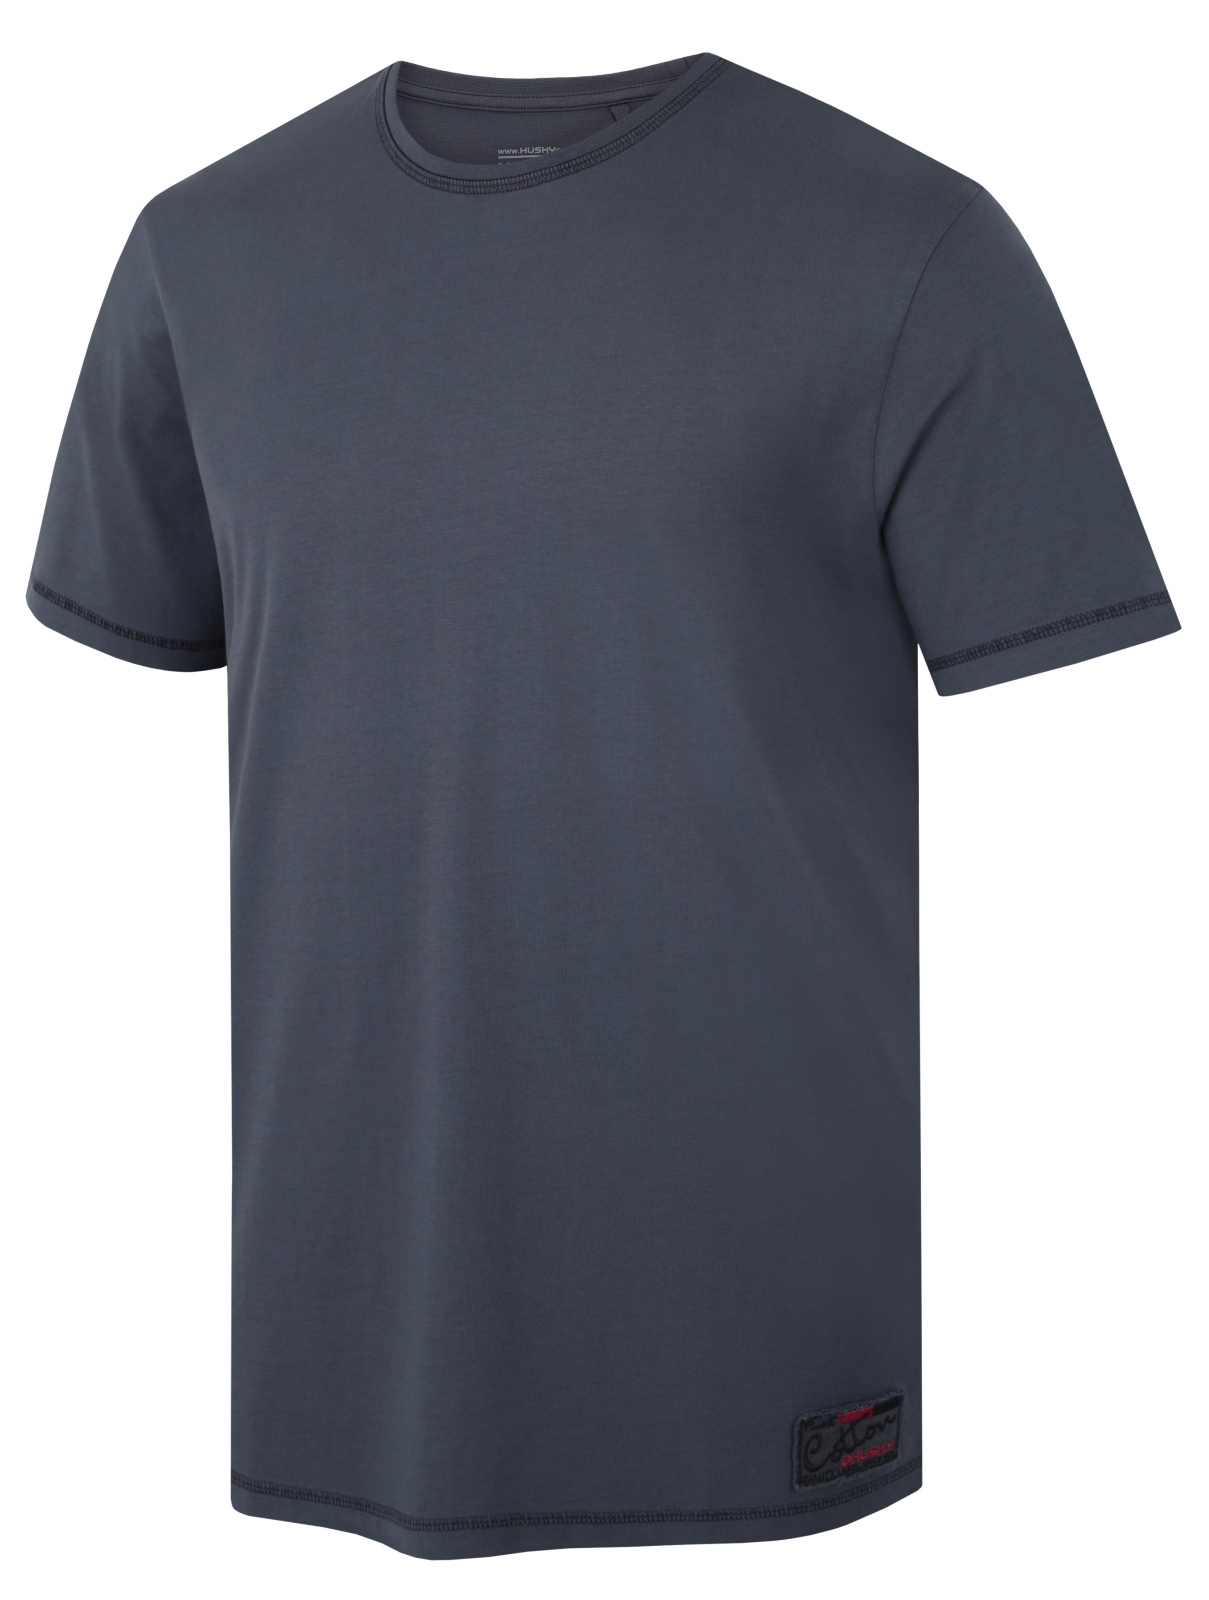 Husky Pánské bavlněné triko Tee Base M dark grey Velikost: S pánské tričko s krátkým rukávem